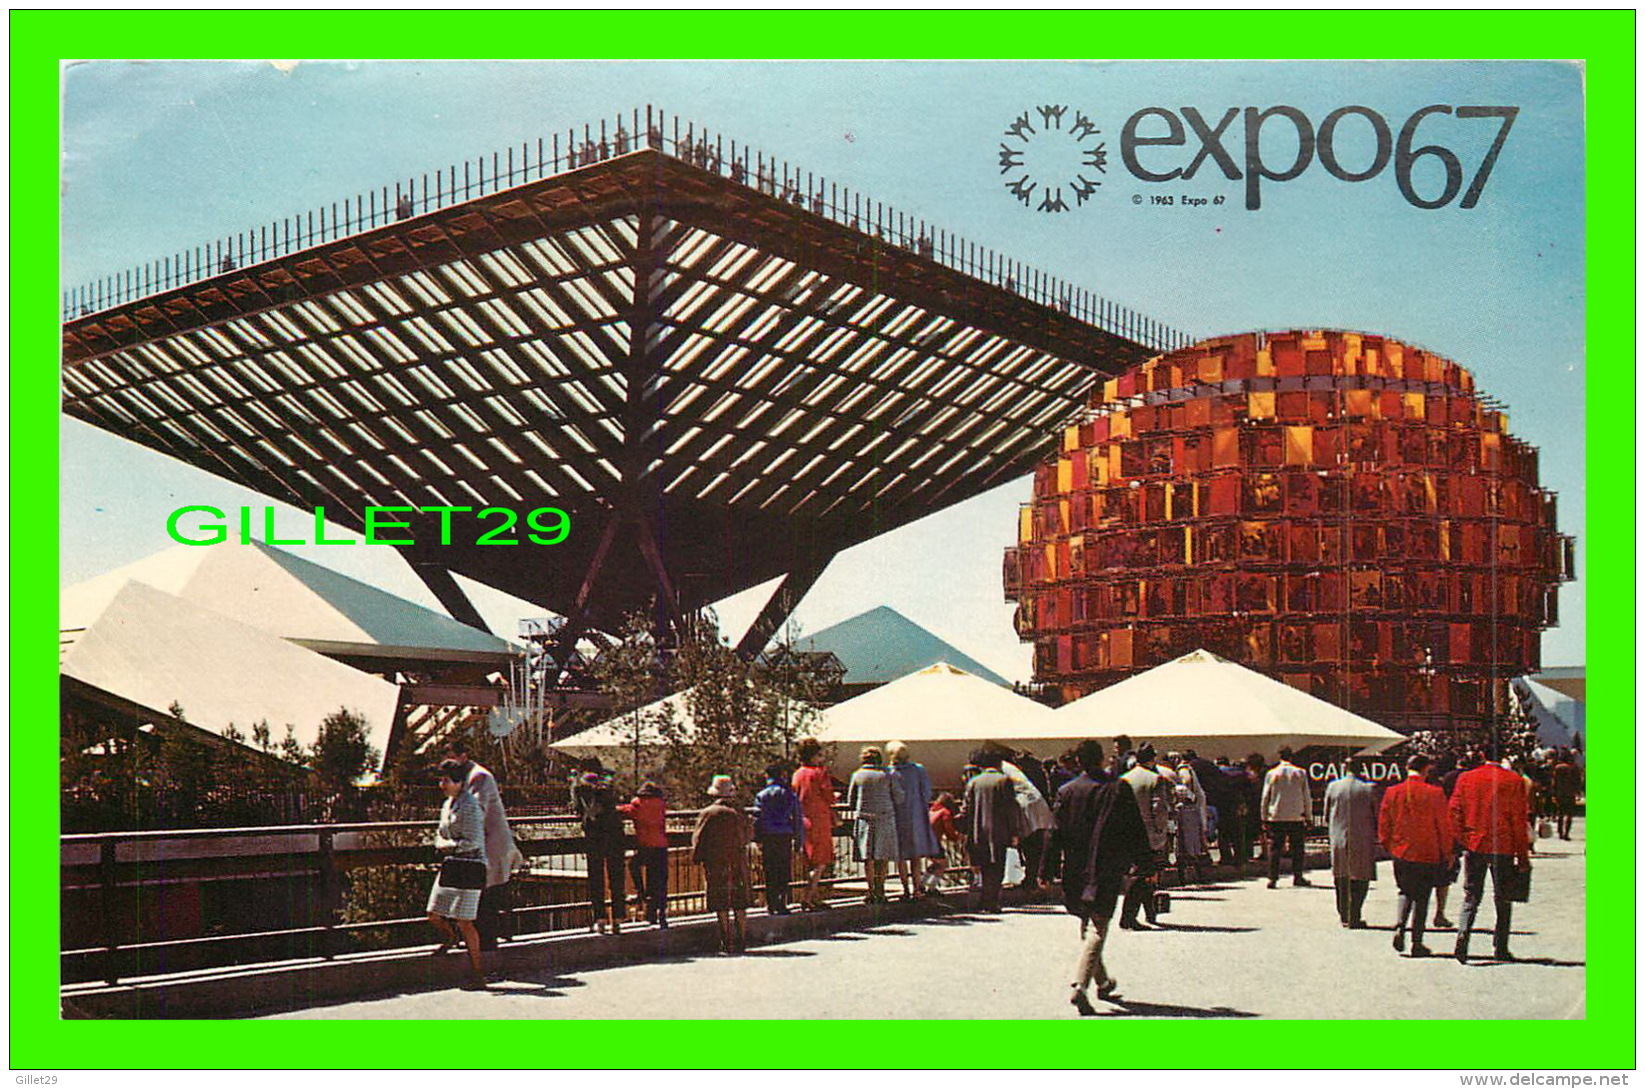 EXPOSITIONS - EXPO67, MONTRÉAL - LE PAVILLON DU CANADA -  No EX201 - CIRCULÉE EN 1967 - MESSAGERIES DE PRESSE BENJAMIN - - Expositions